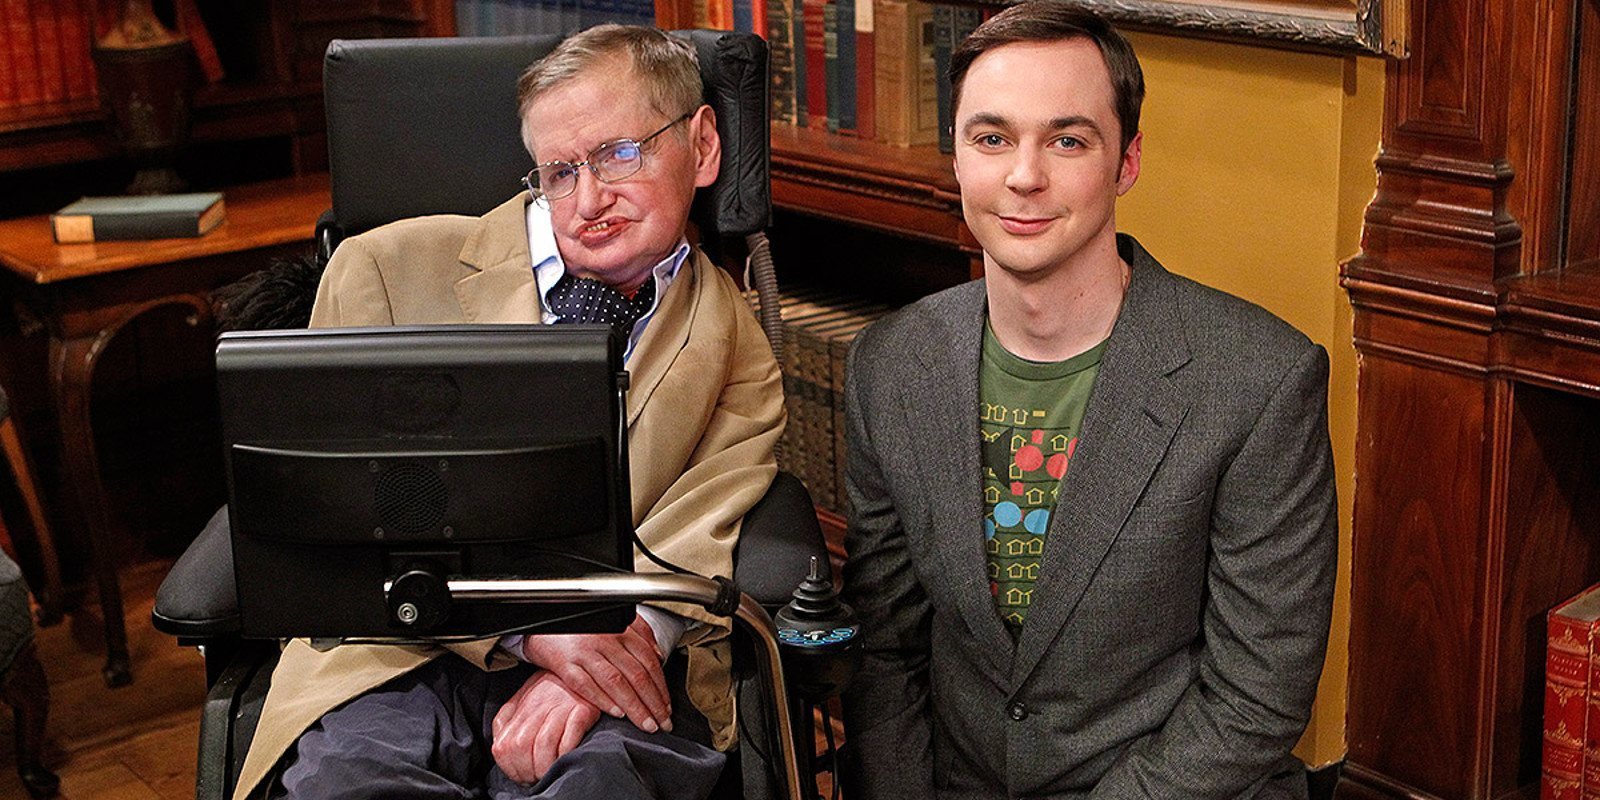 Homenaje a Stephen Hawking: sus apariciones en televisión